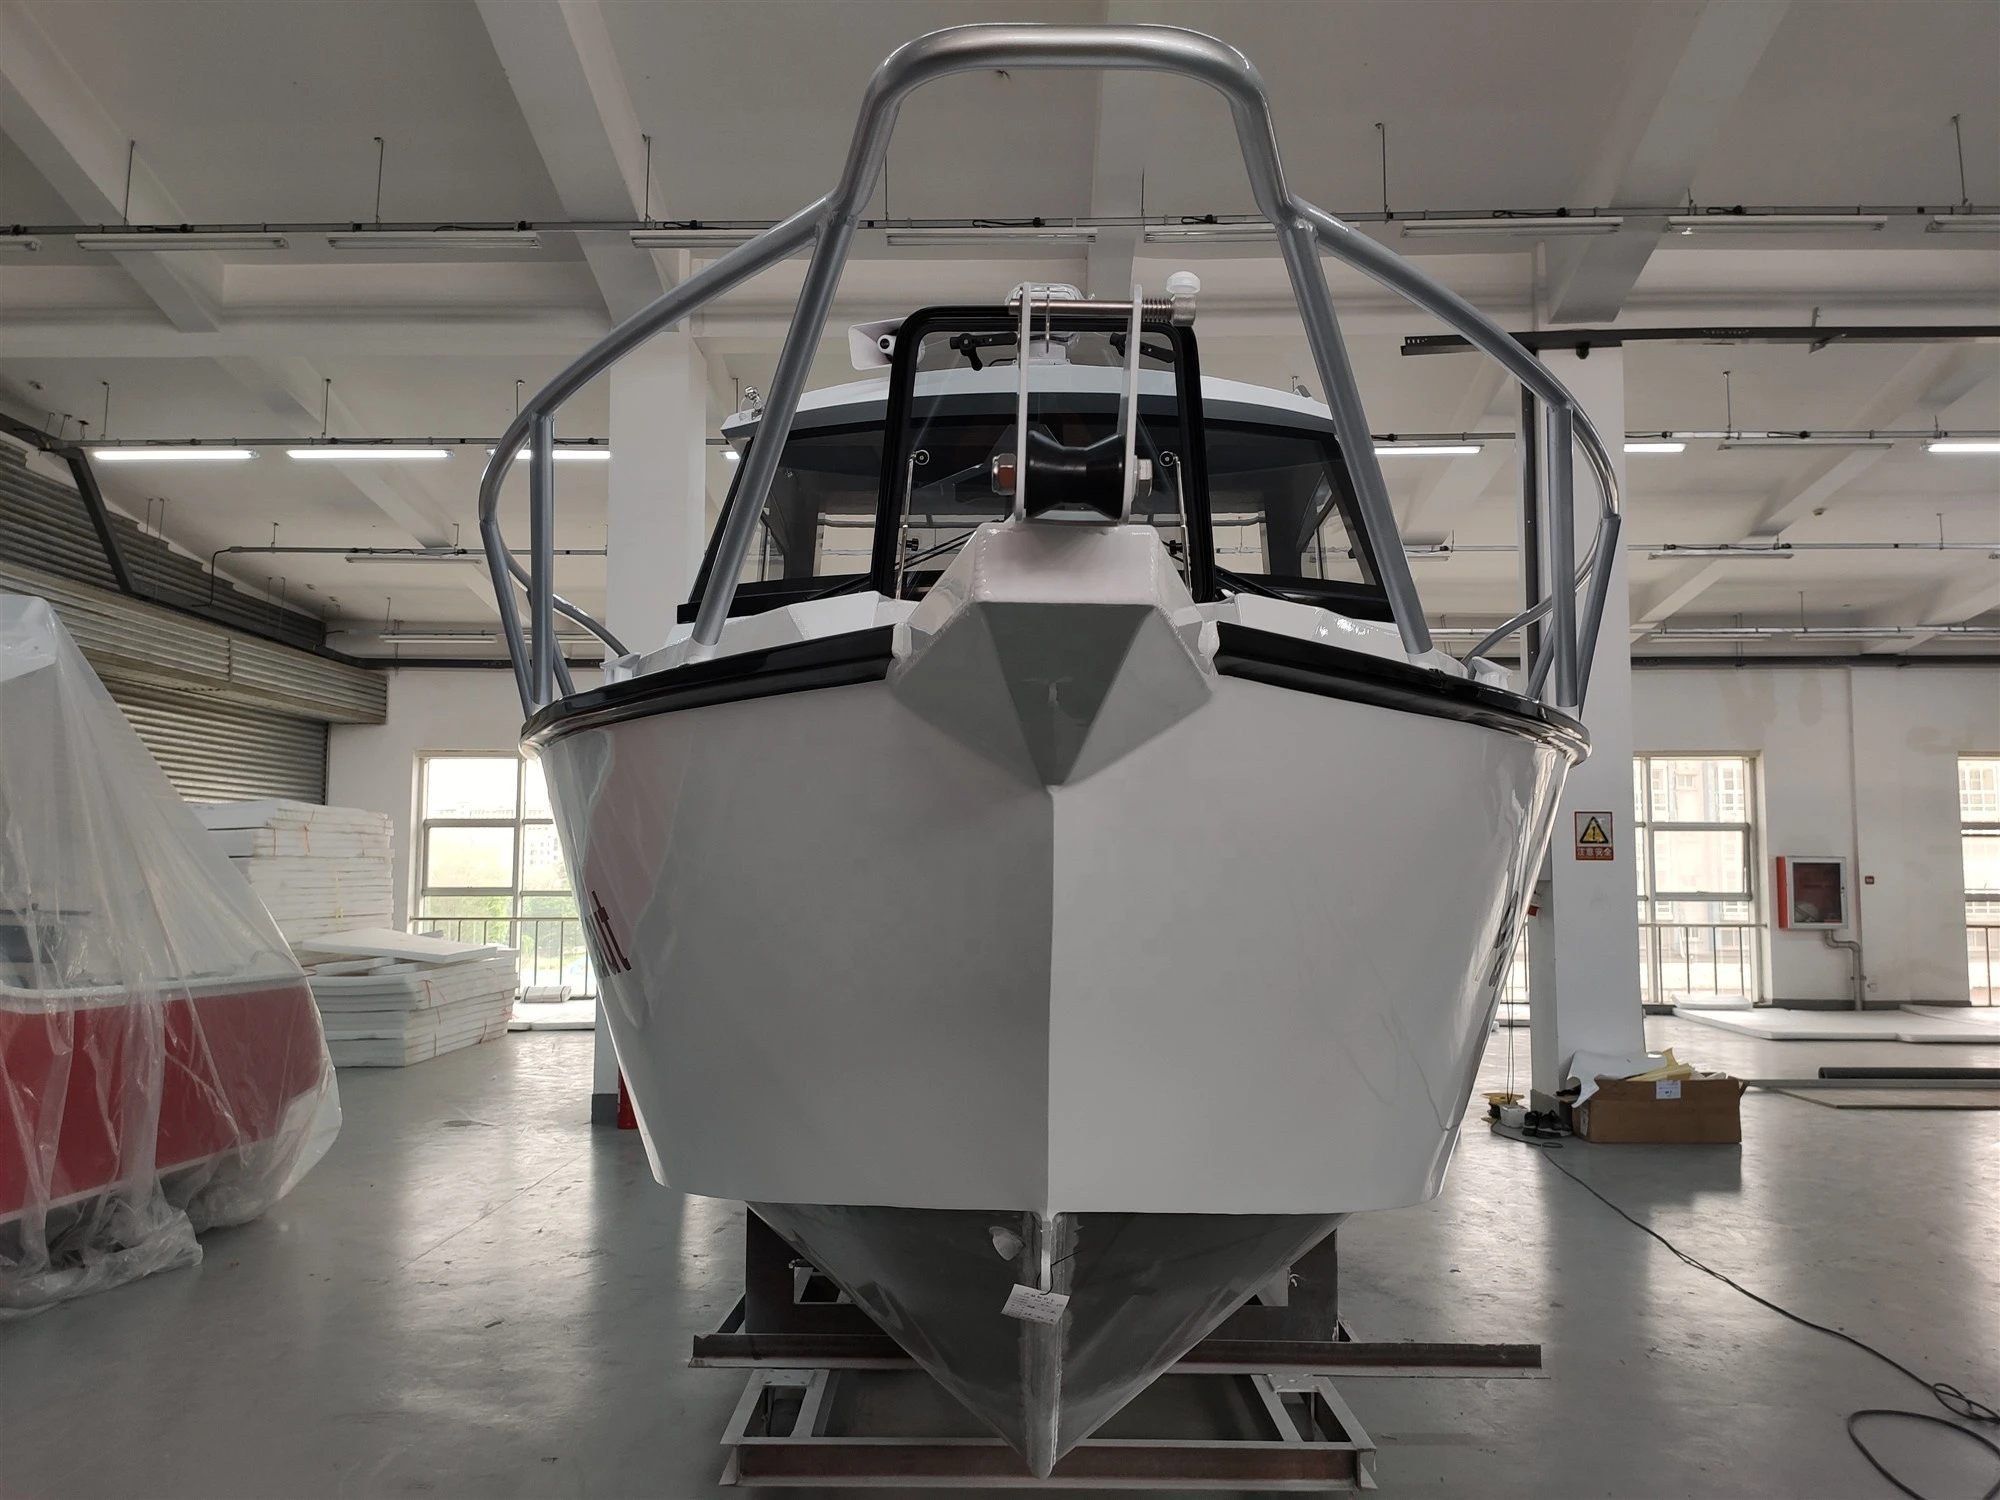 Gospel 23ft /6.85m Cuddy Cabin aluminum fishing boat -Speed Boat